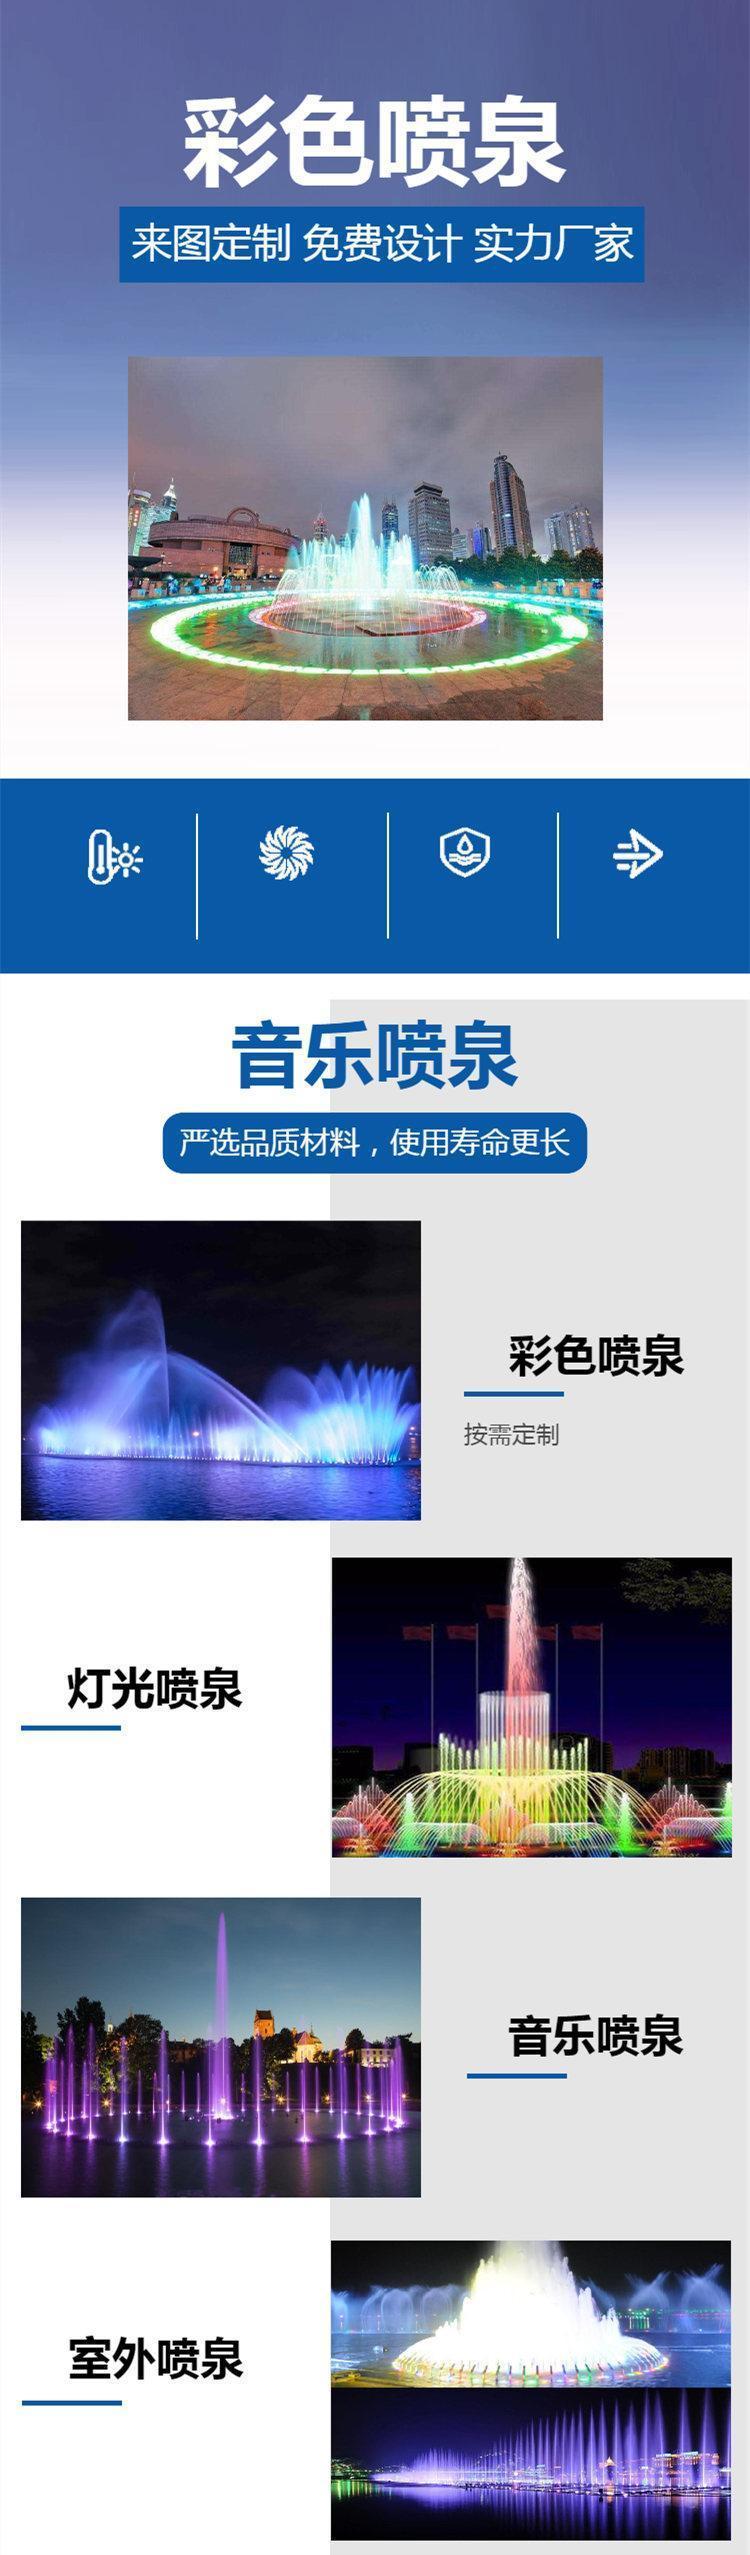 信阳曲阳石雕喷泉厂家_信阳小区喷泉设计_信阳喷泉公司